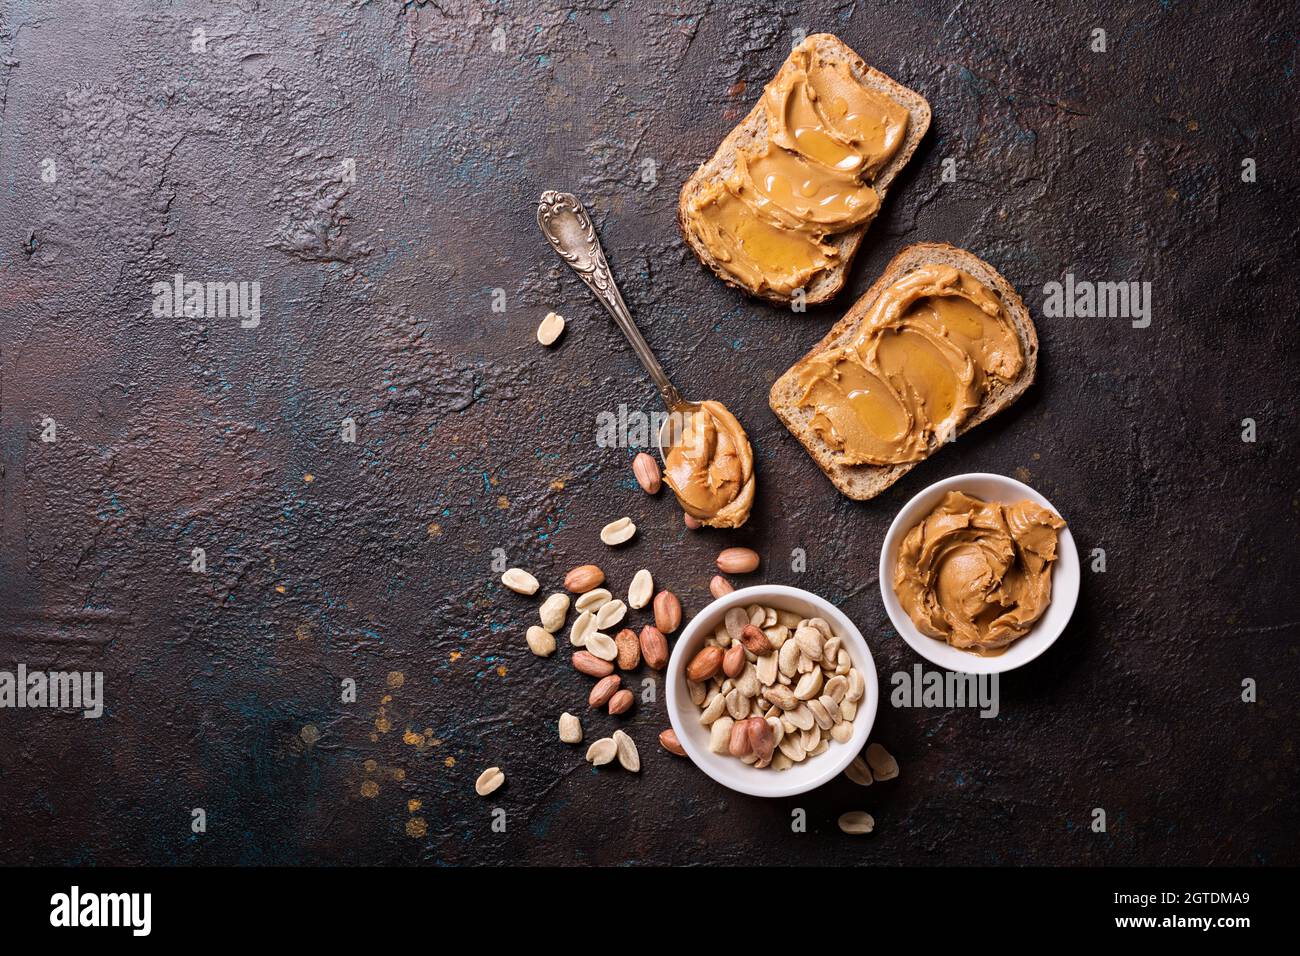 Süsse Erdnusspaste oder Butter mit Honig auf Brot für leckeres Frühstück auf dunklem Betongrund Stockfoto